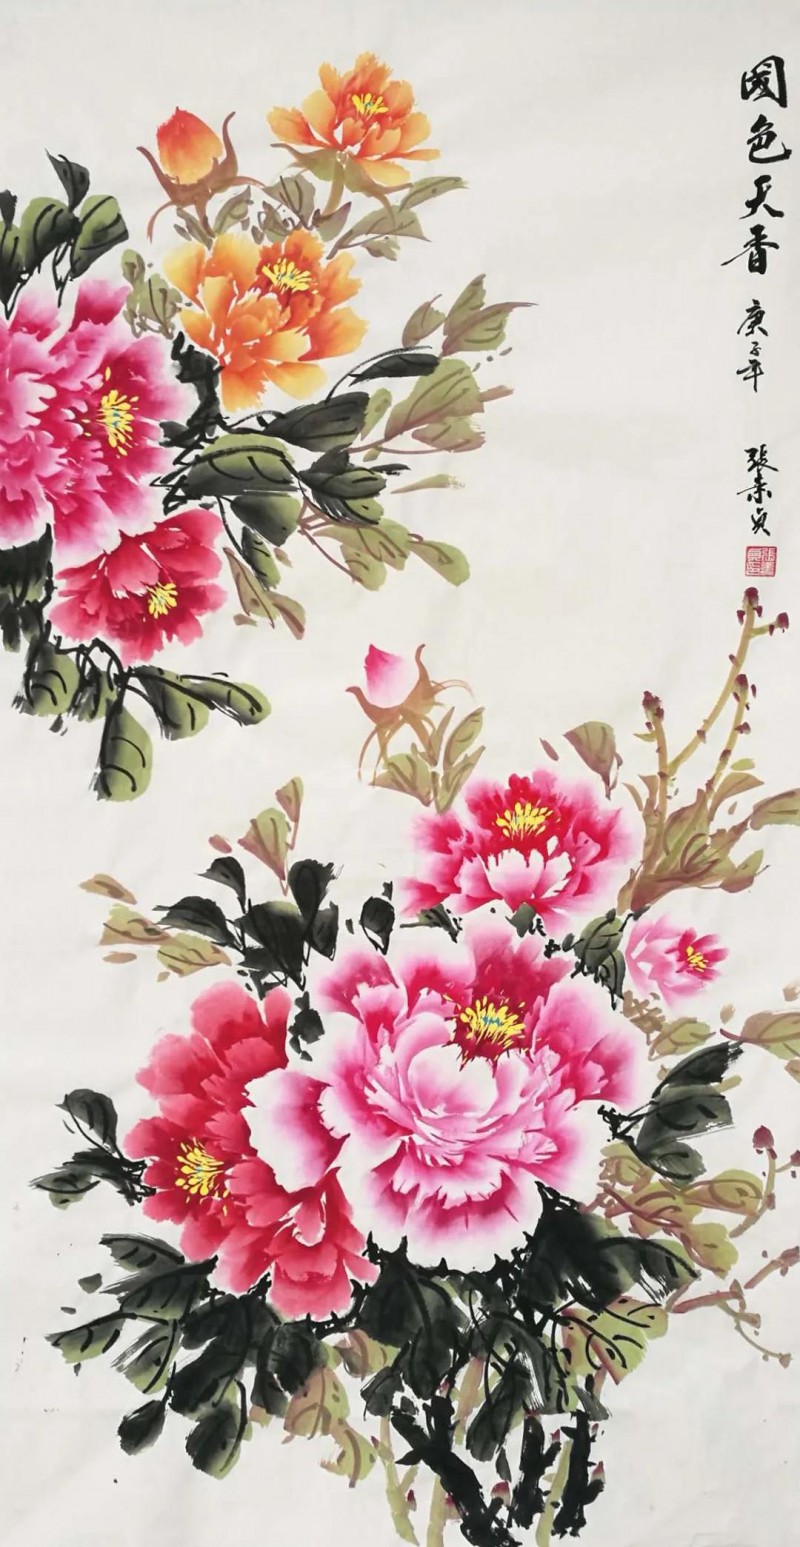 张素贞——中宣盛世国际书画院院聘画家、著名书画家